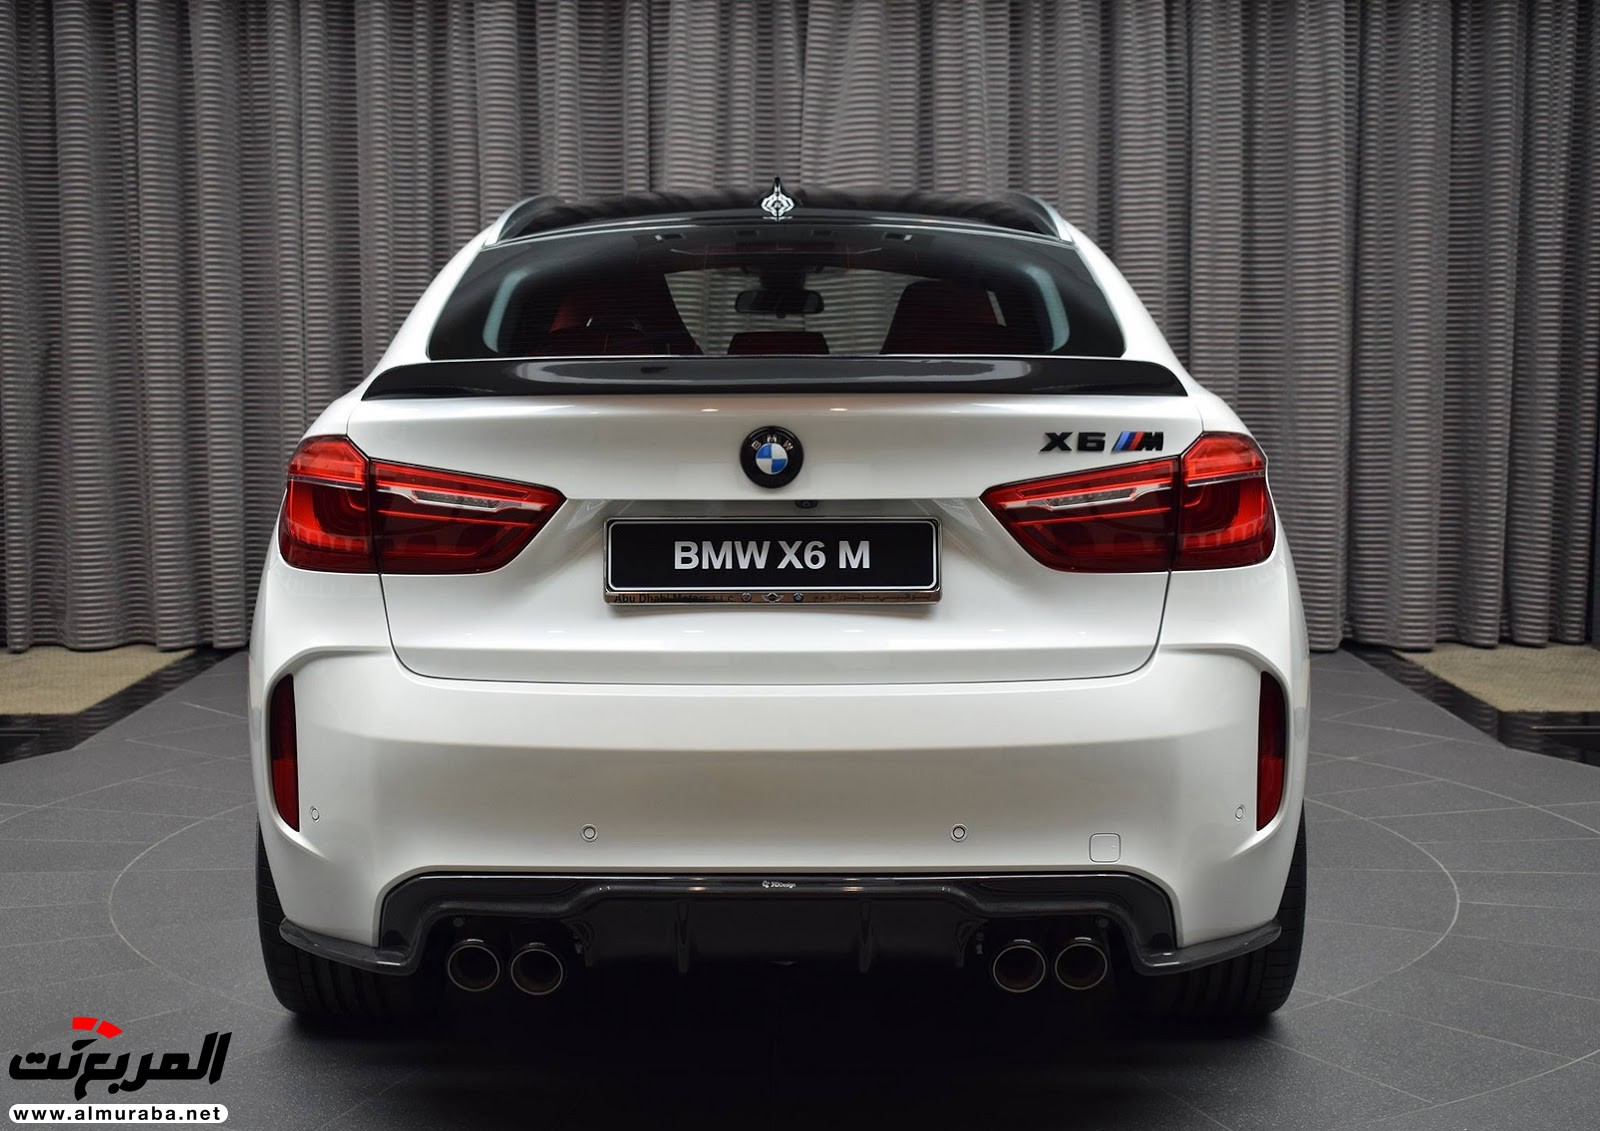 "بي إم دبليو" X6 M عالية الأداء معدّلة بتصاميم 3D معروضة بأبو ظبي BMW 97